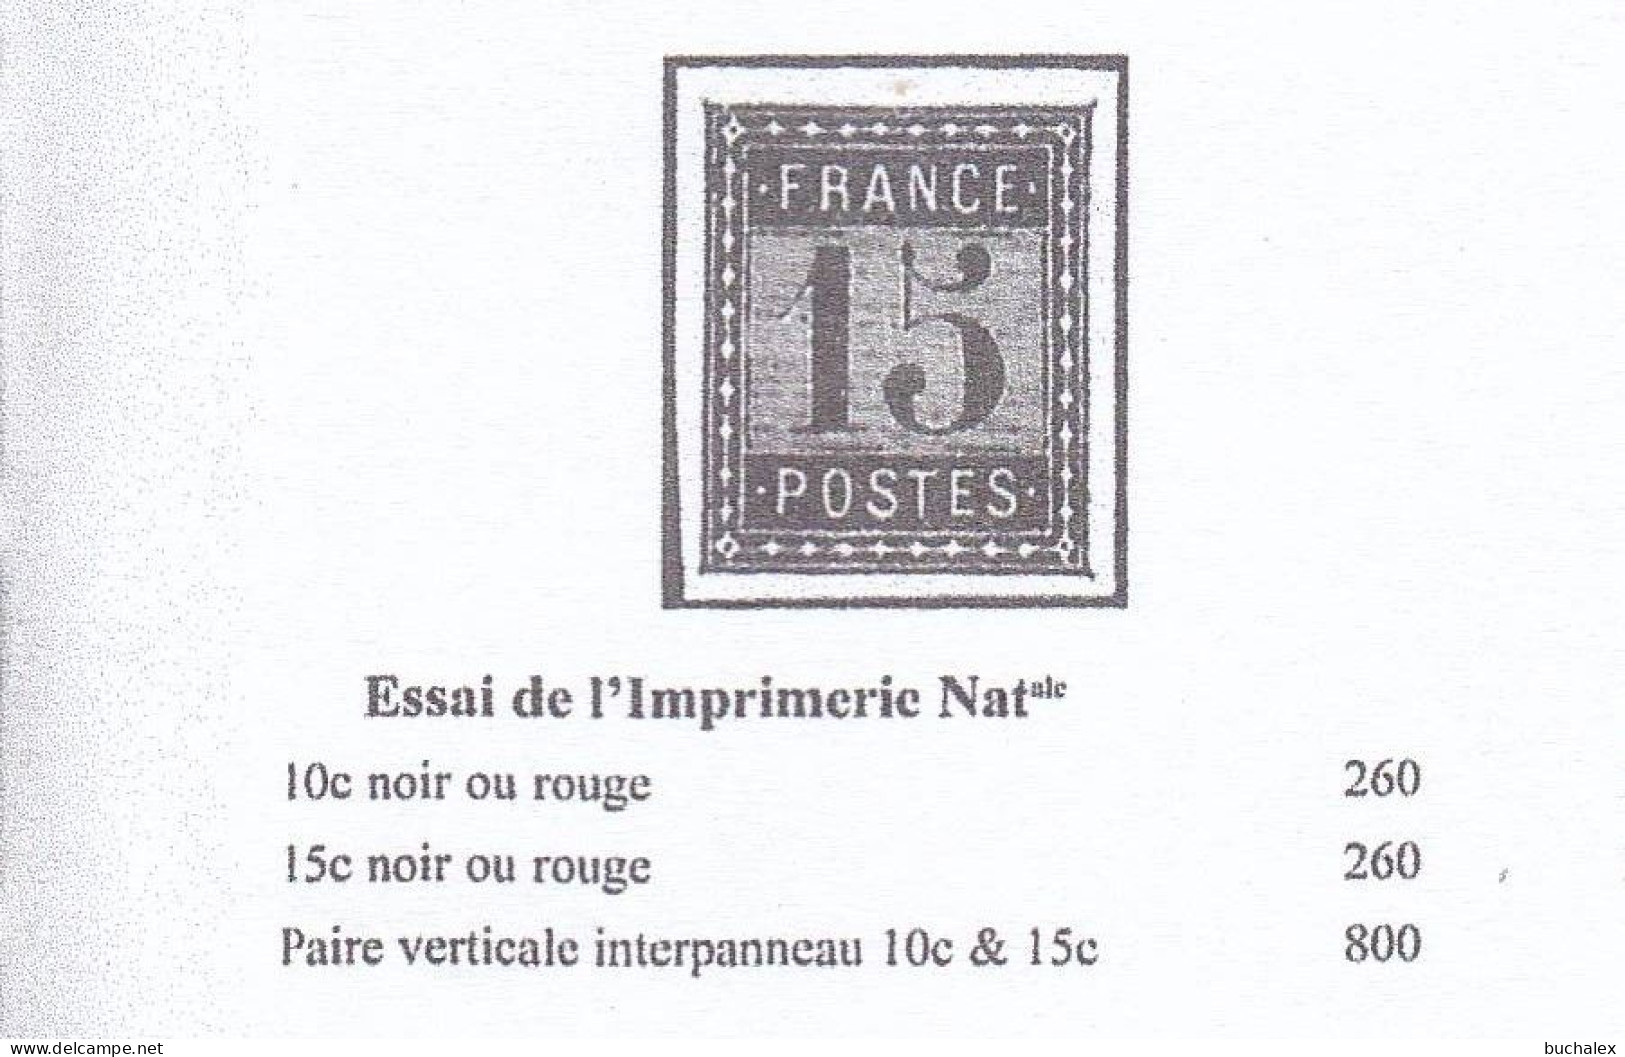 Frankreich Dreierstreifen Essays "De L'IMPRIMERIE NATIONALE",(*)/MNG, KW Maury 780 Euro - Essais, Non-émis & Vignettes Expérimentales